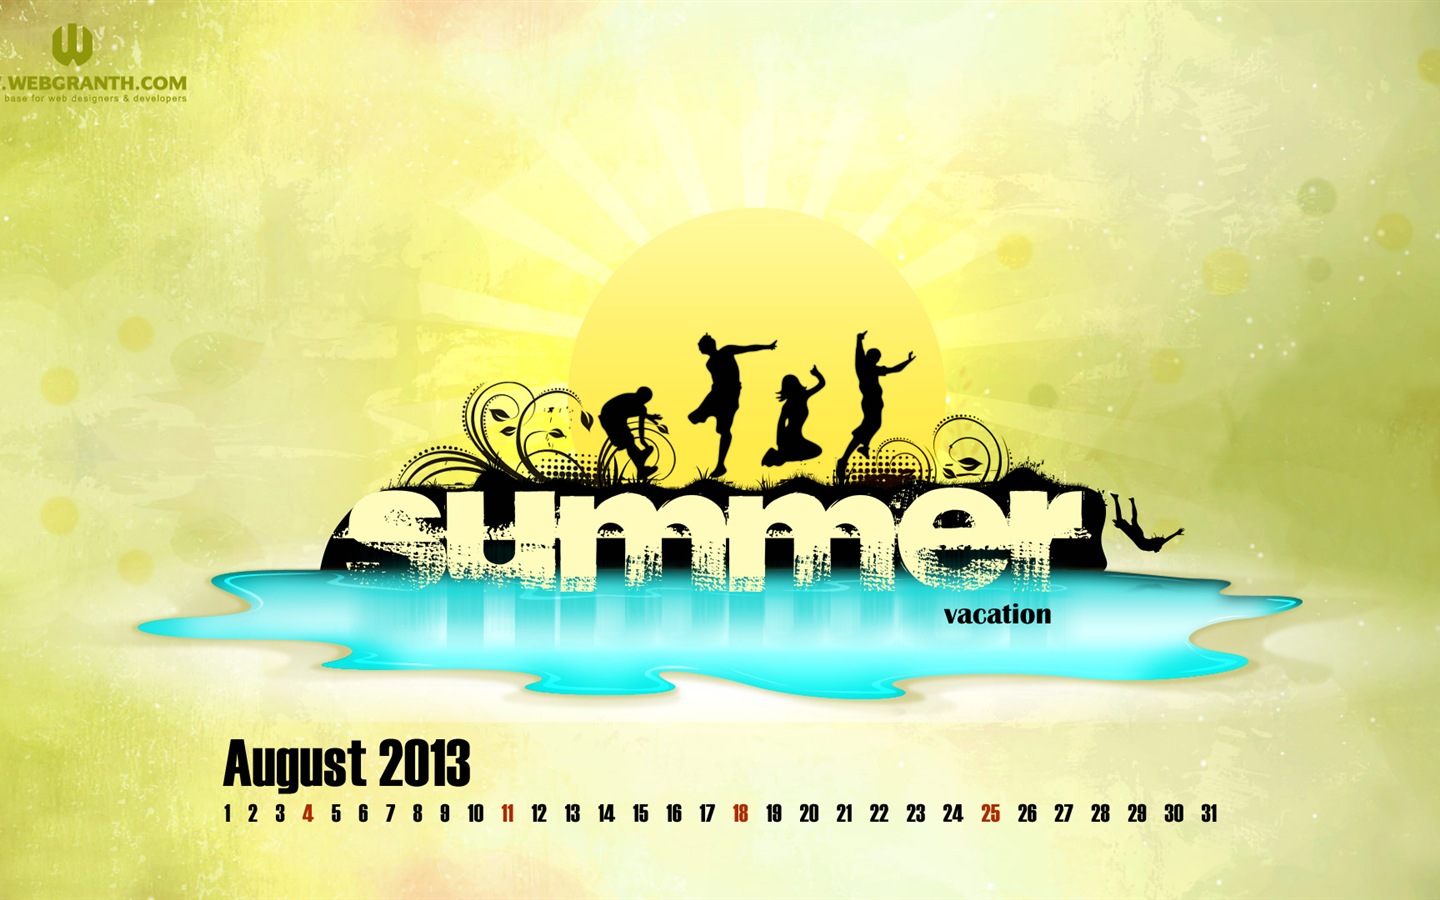 August 2013 calendar wallpaper (2) #20 - 1440x900